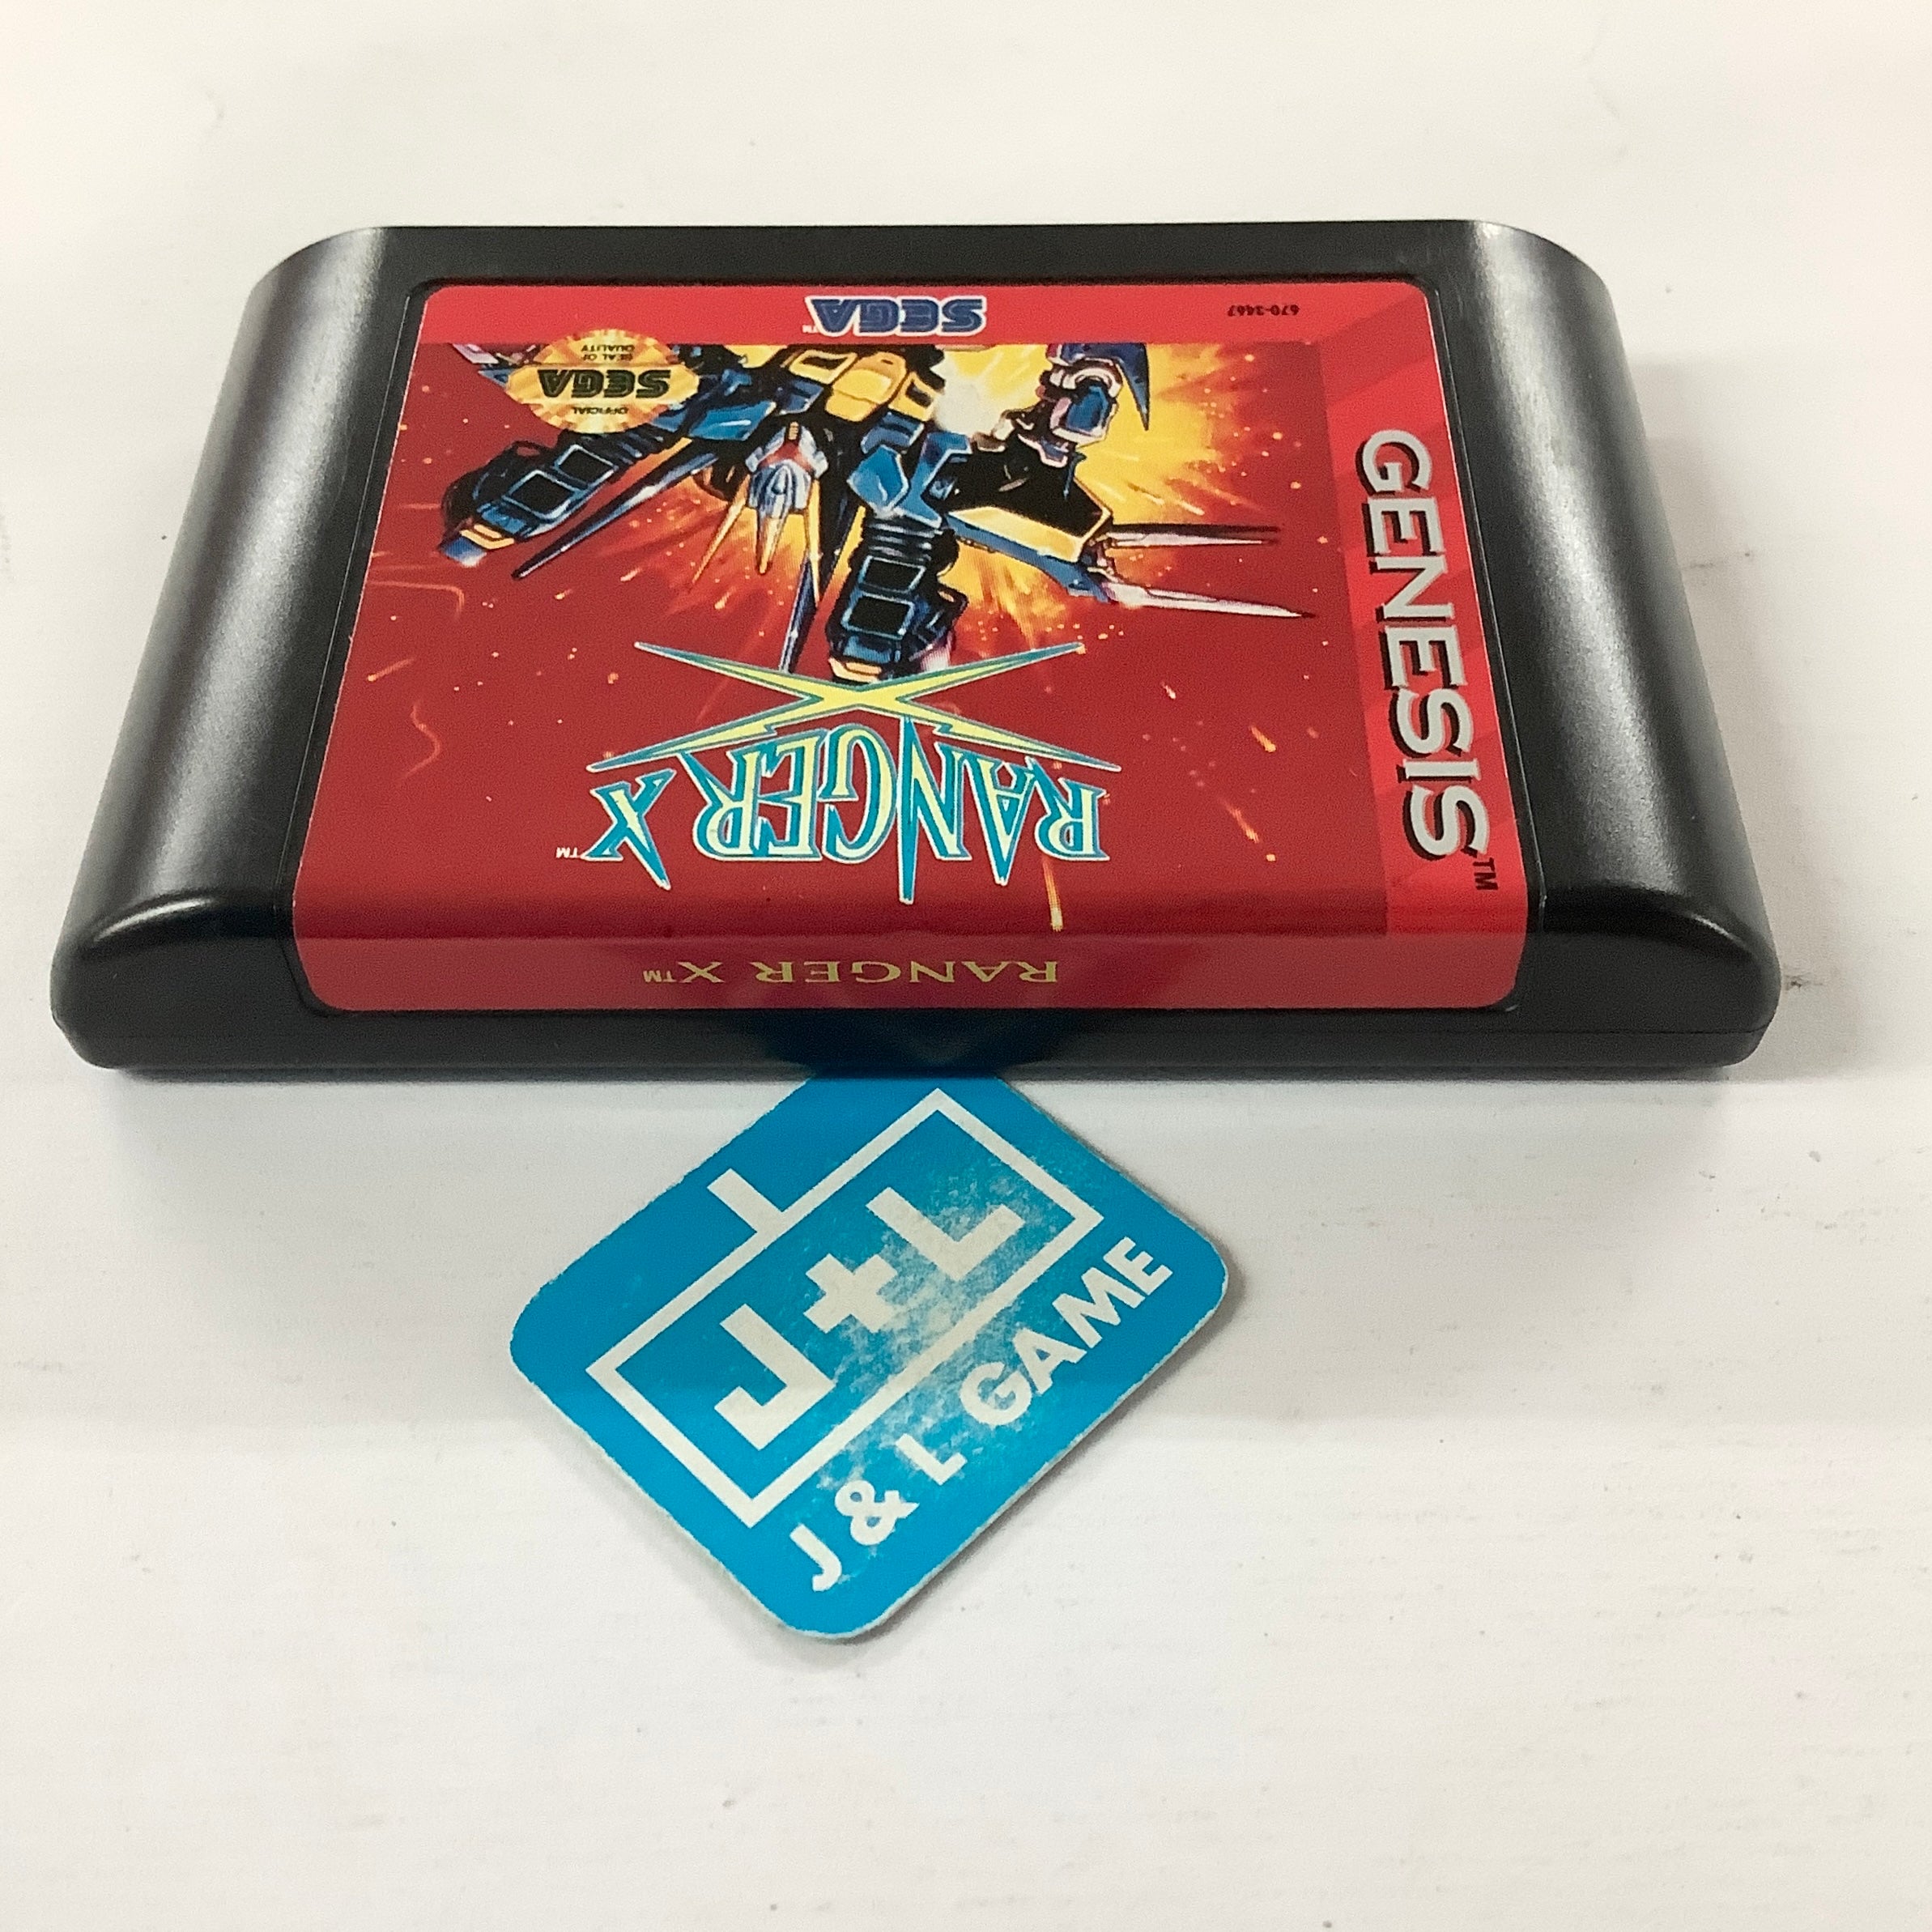 Ranger X - (SG) SEGA Genesis [Pre-Owned] Video Games Sega   